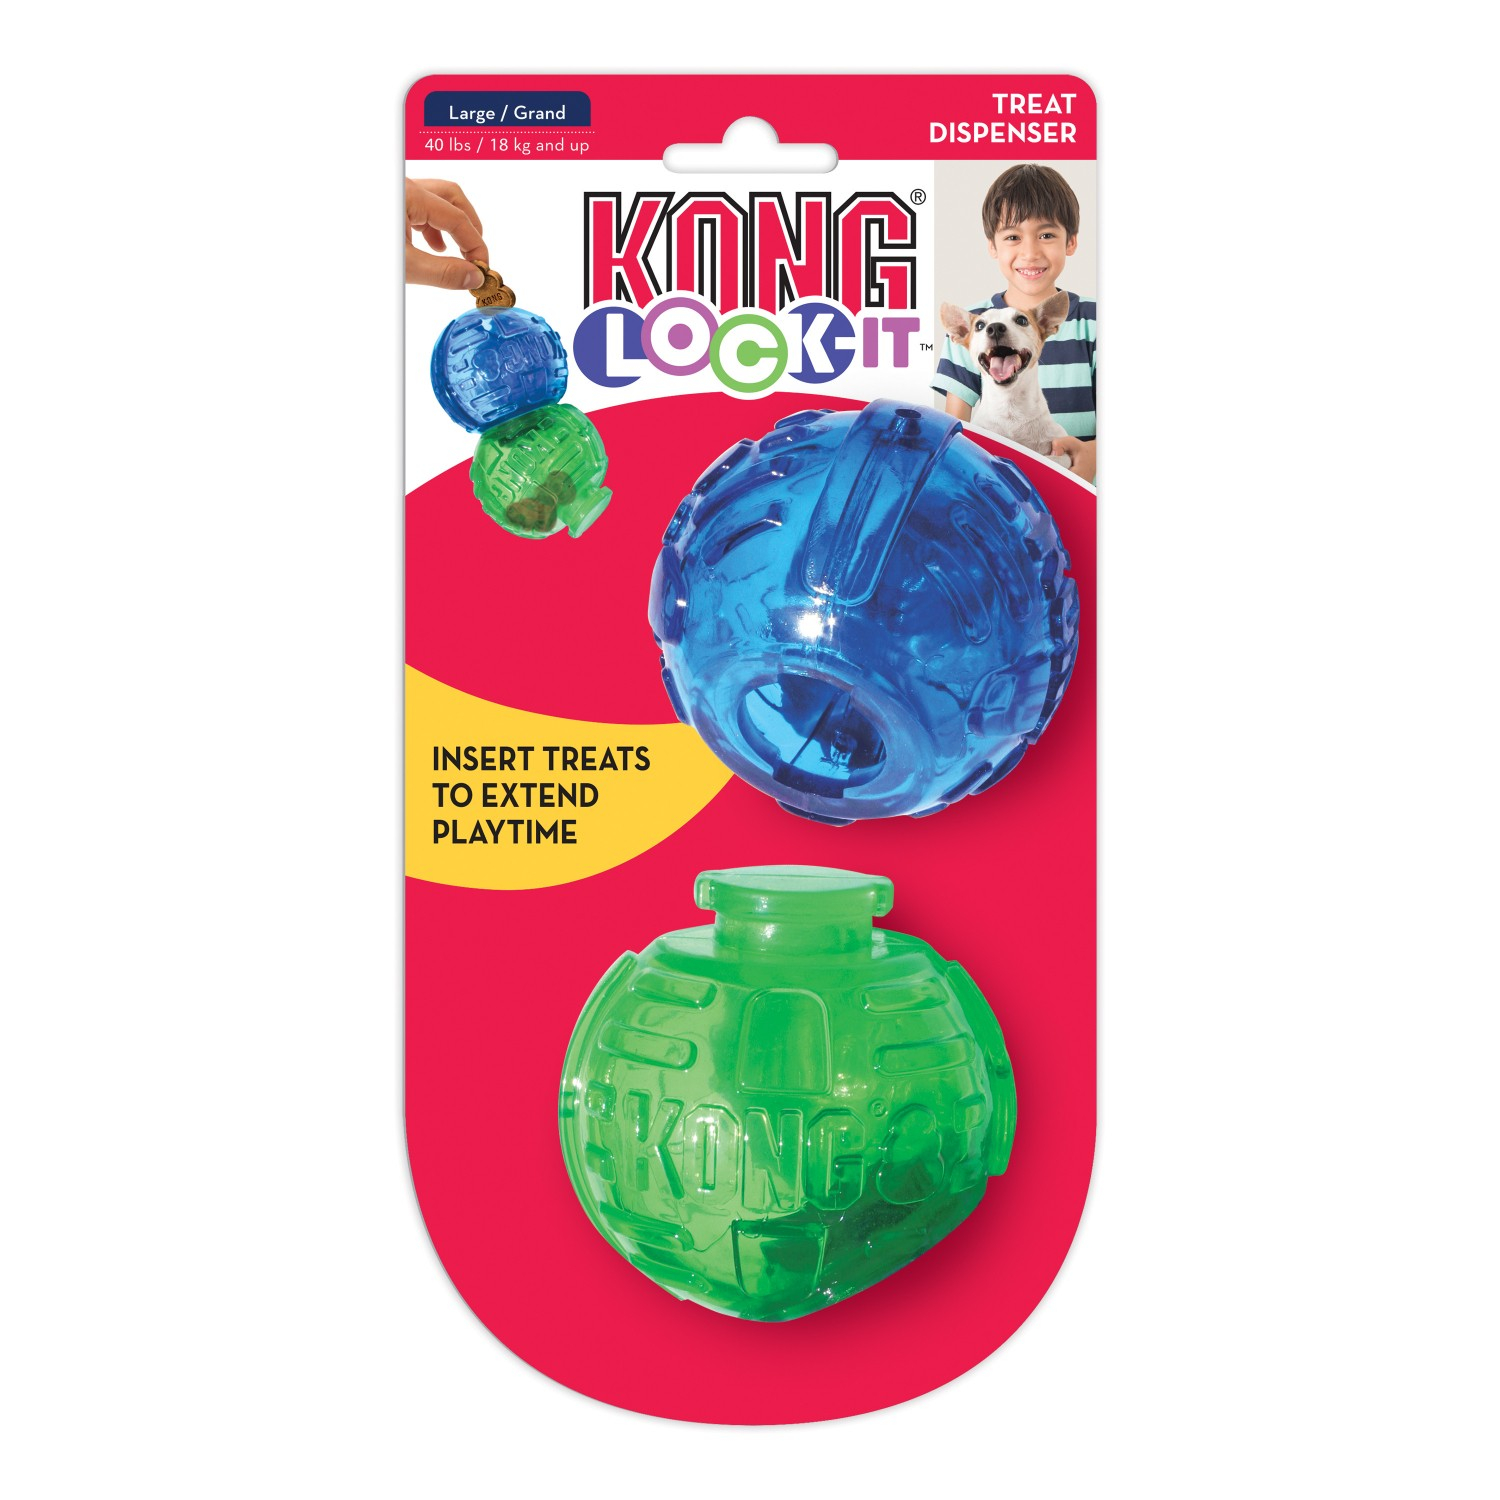 KONG Lock-It Hundespielzeug